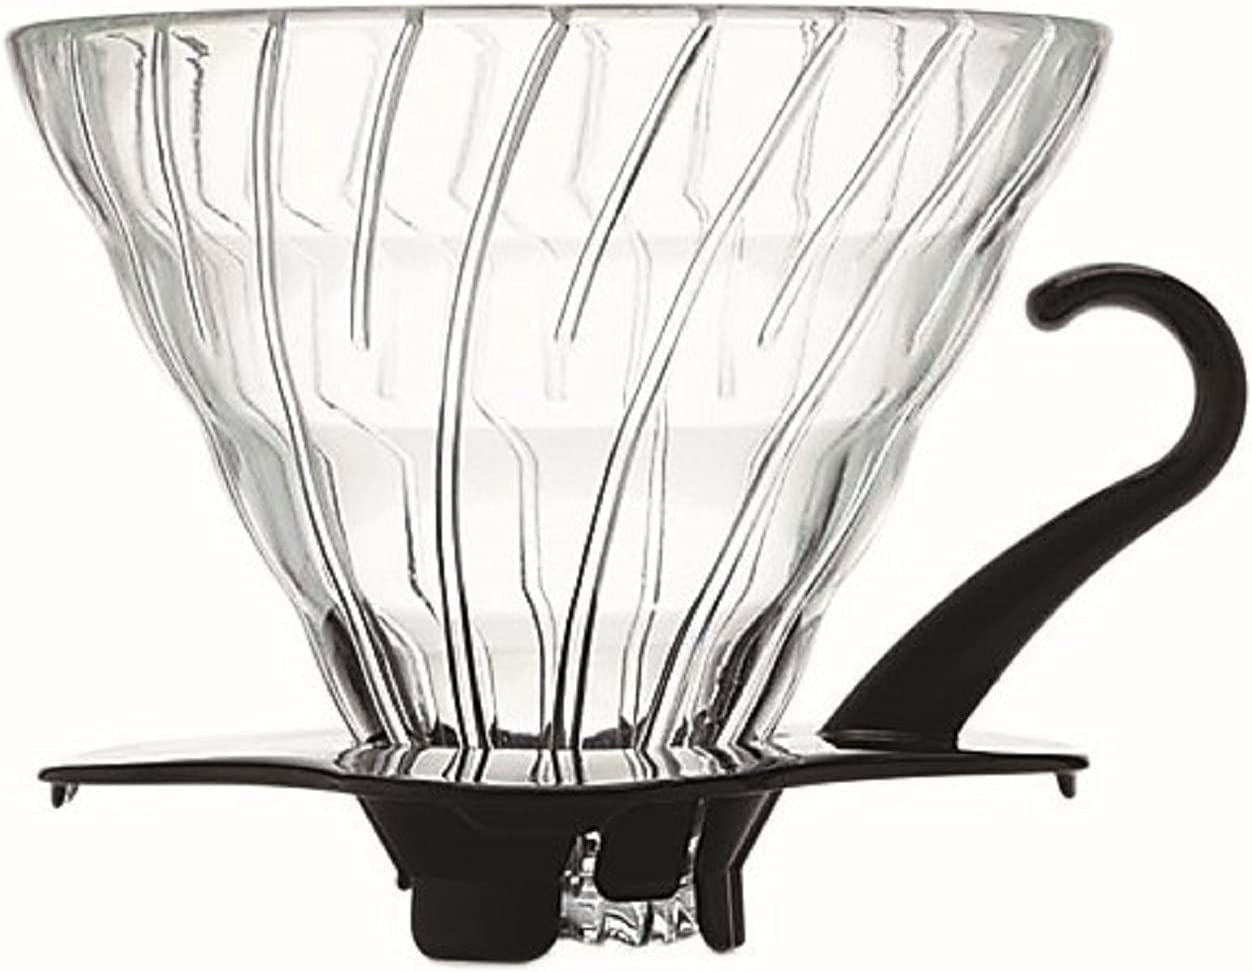 Hario V60 Glass Coffee Dripper Size 02